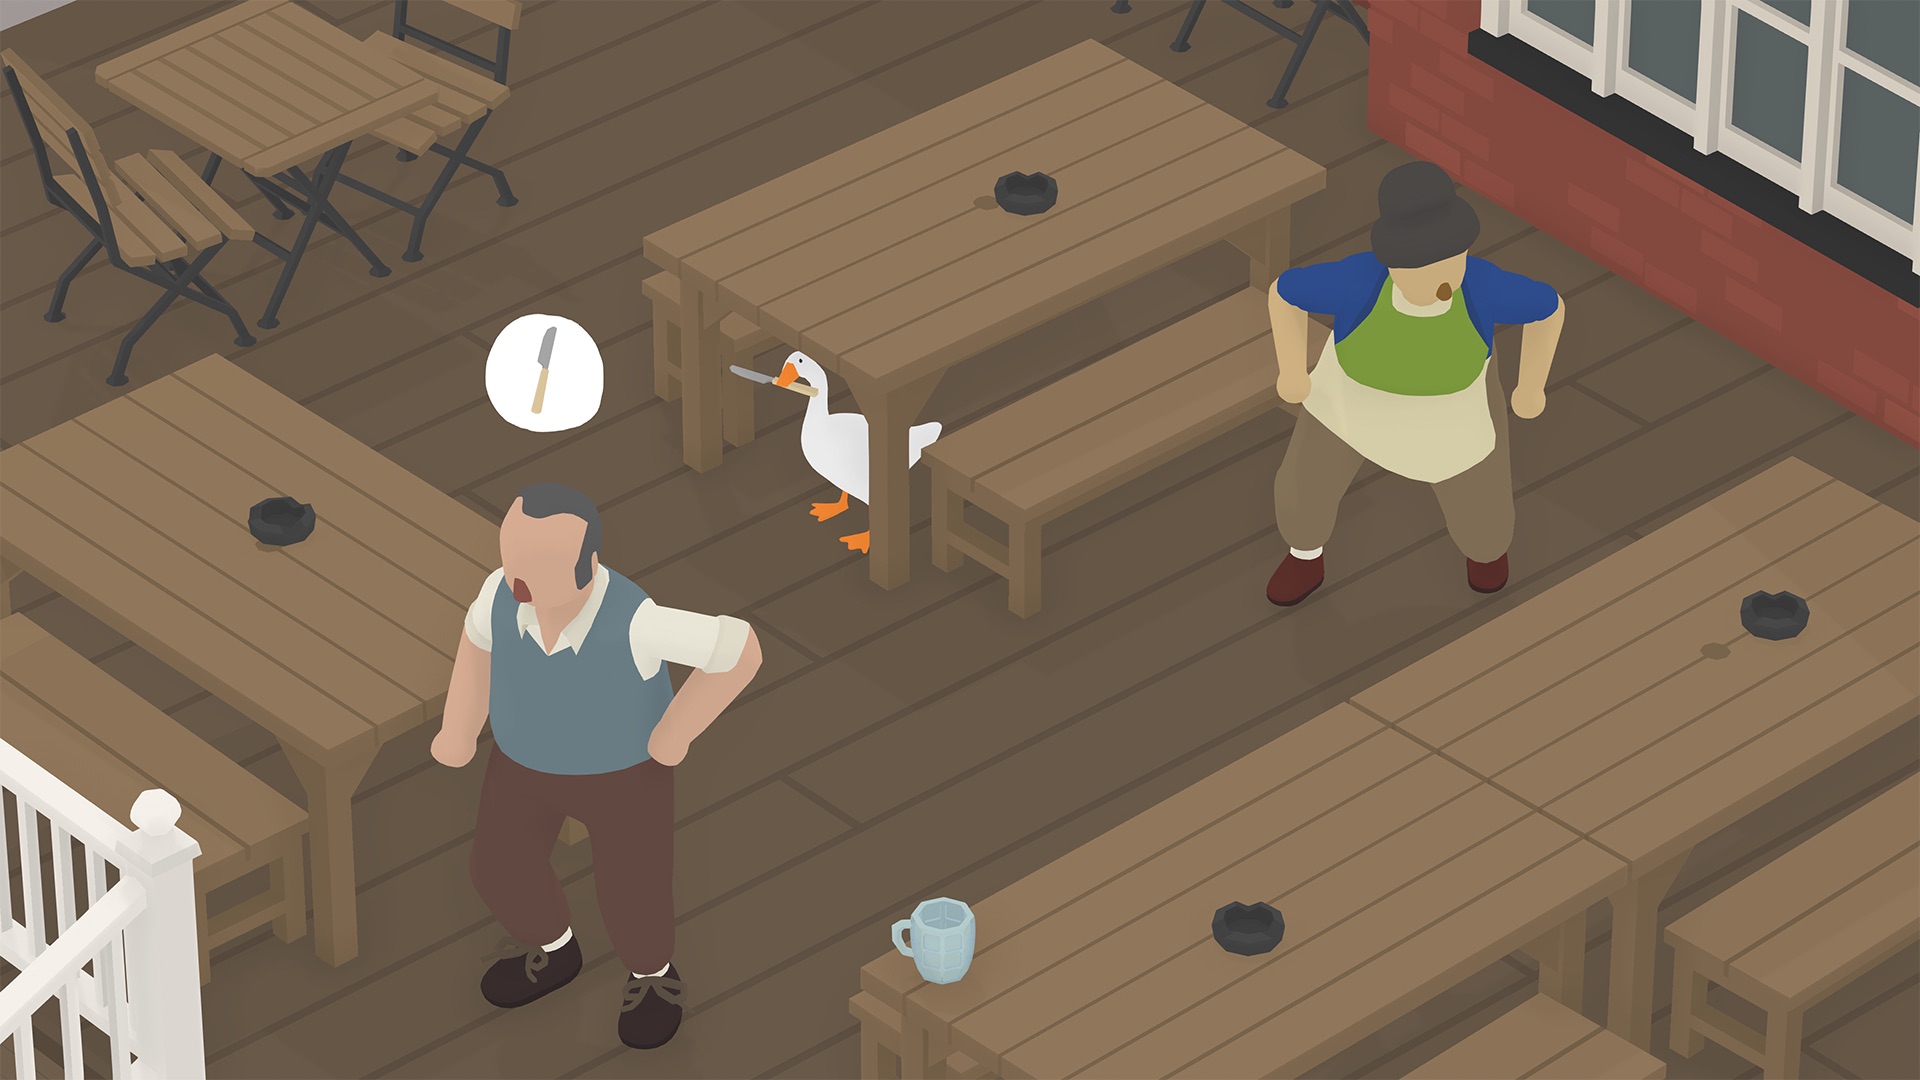 Untitled Goose Game Screenshot 1